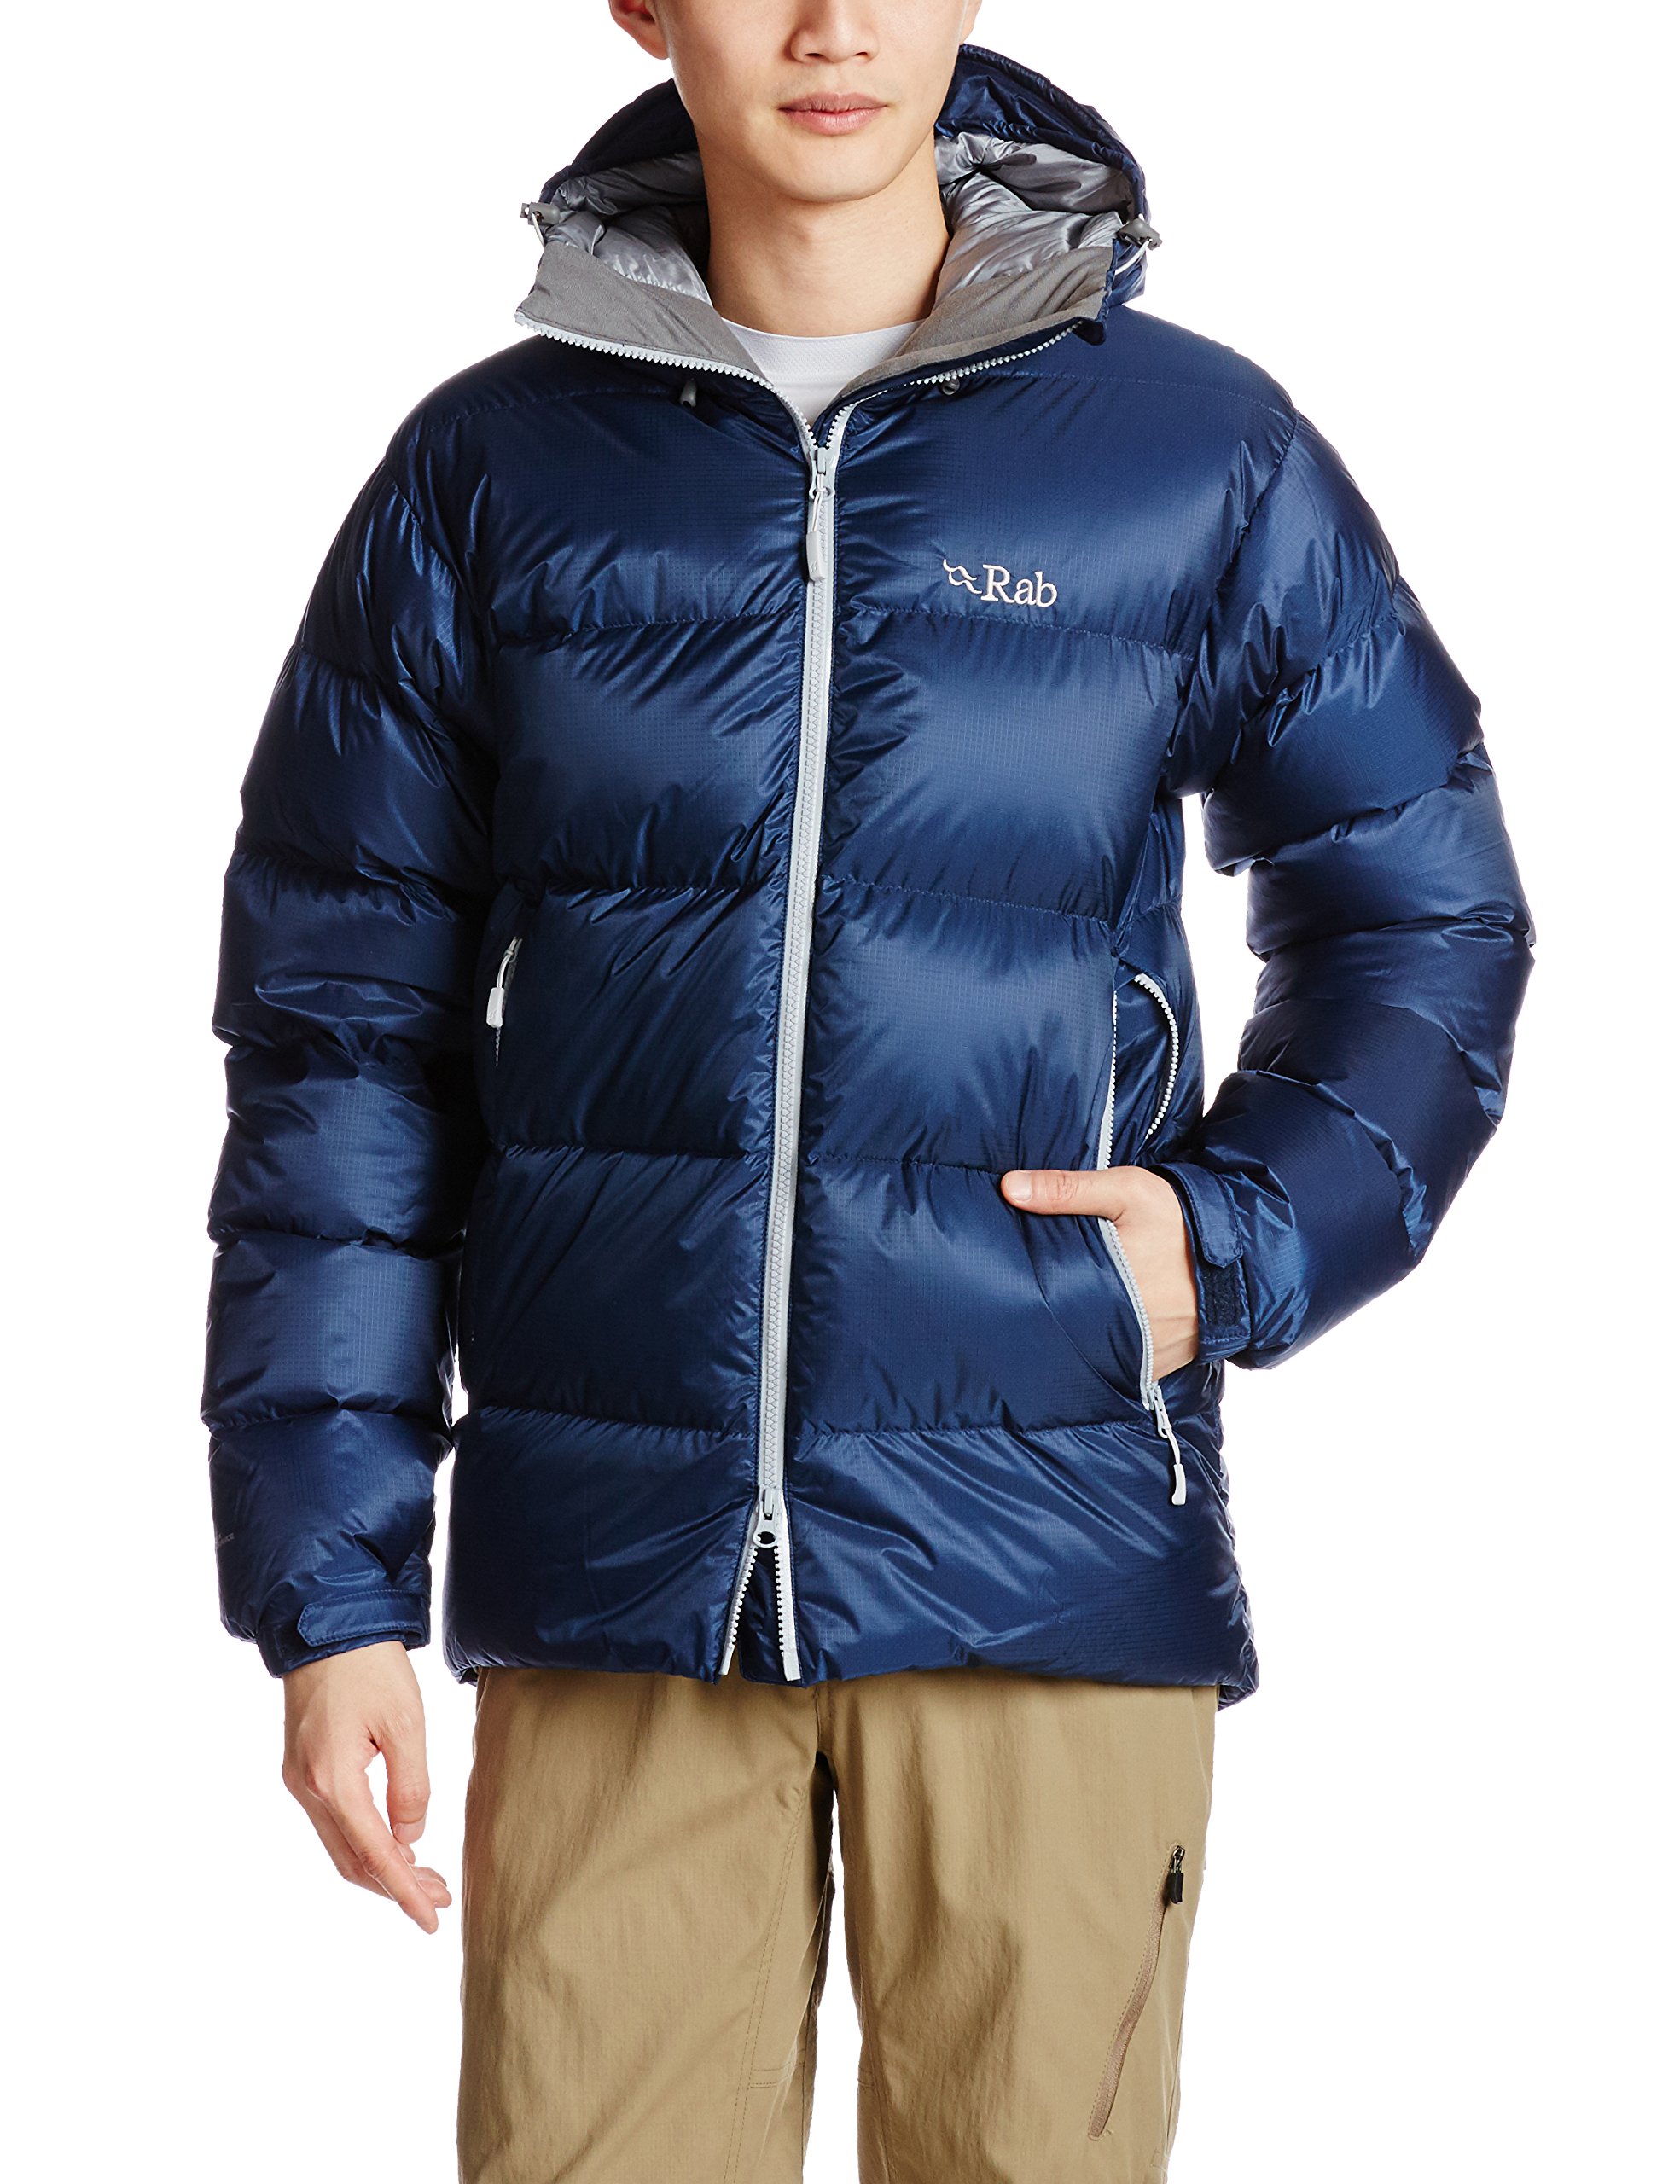 WSPLYSPJY Mens Winter Packable Down Jacket Hooded Lightweight Puffer Coats